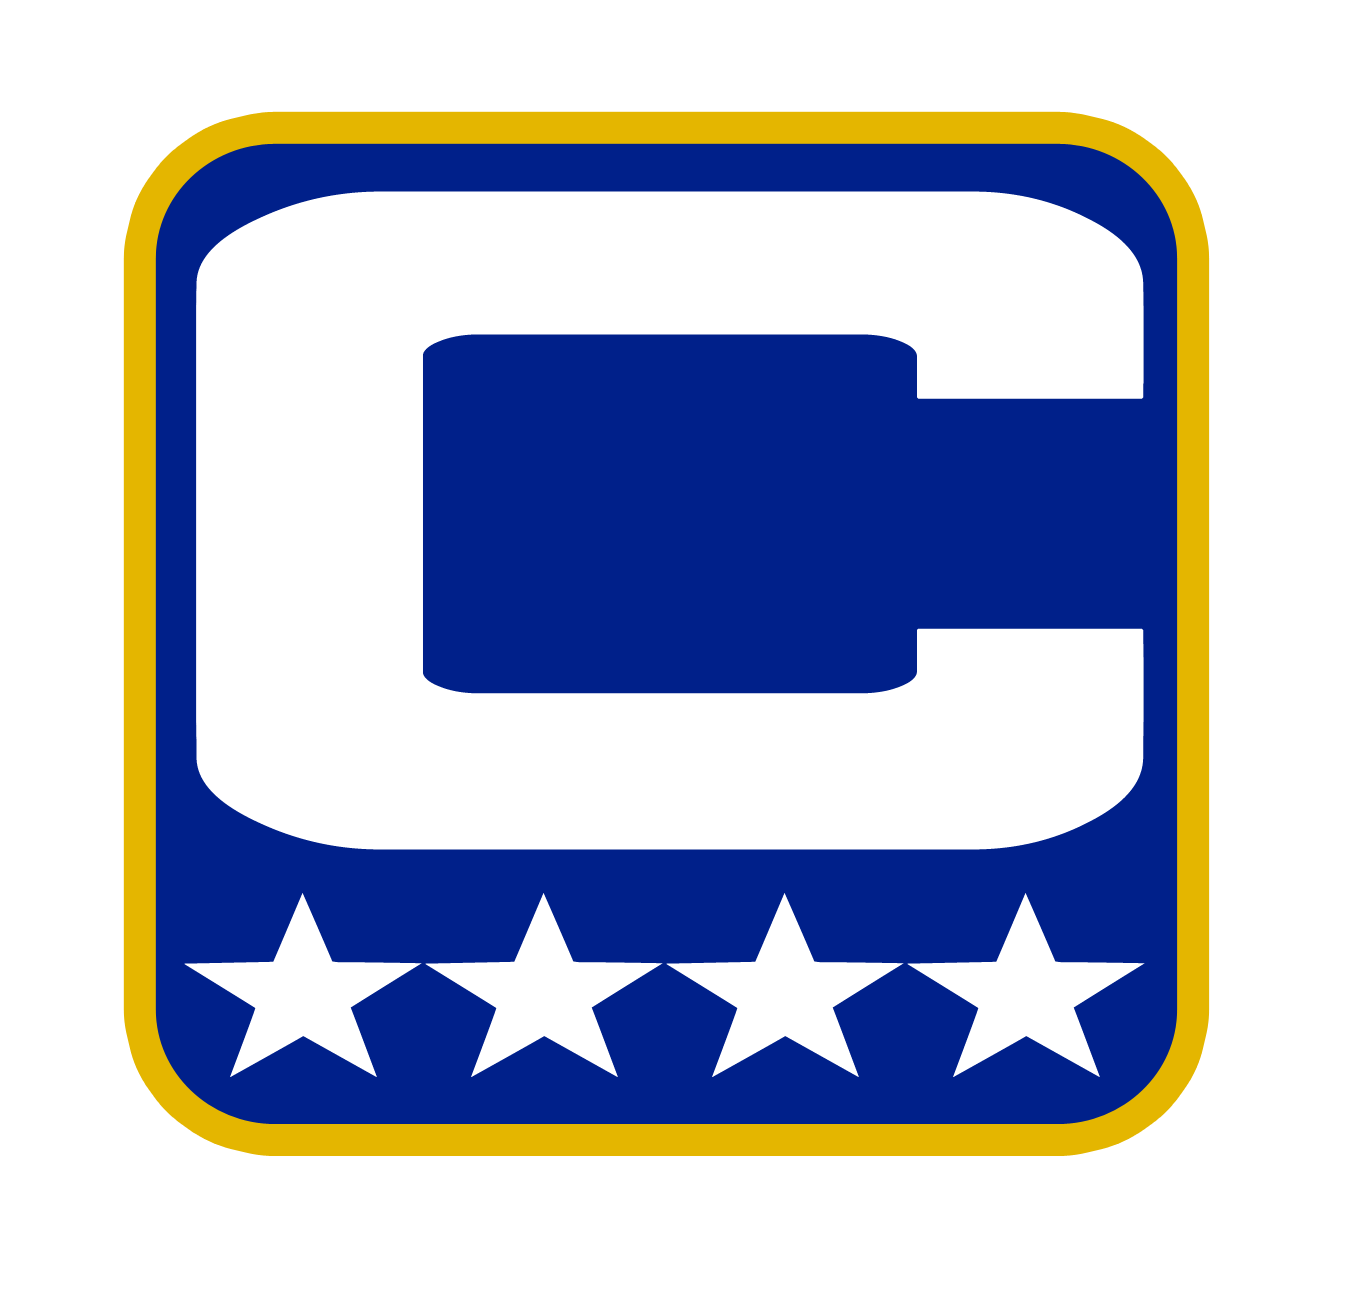 Captain Logos